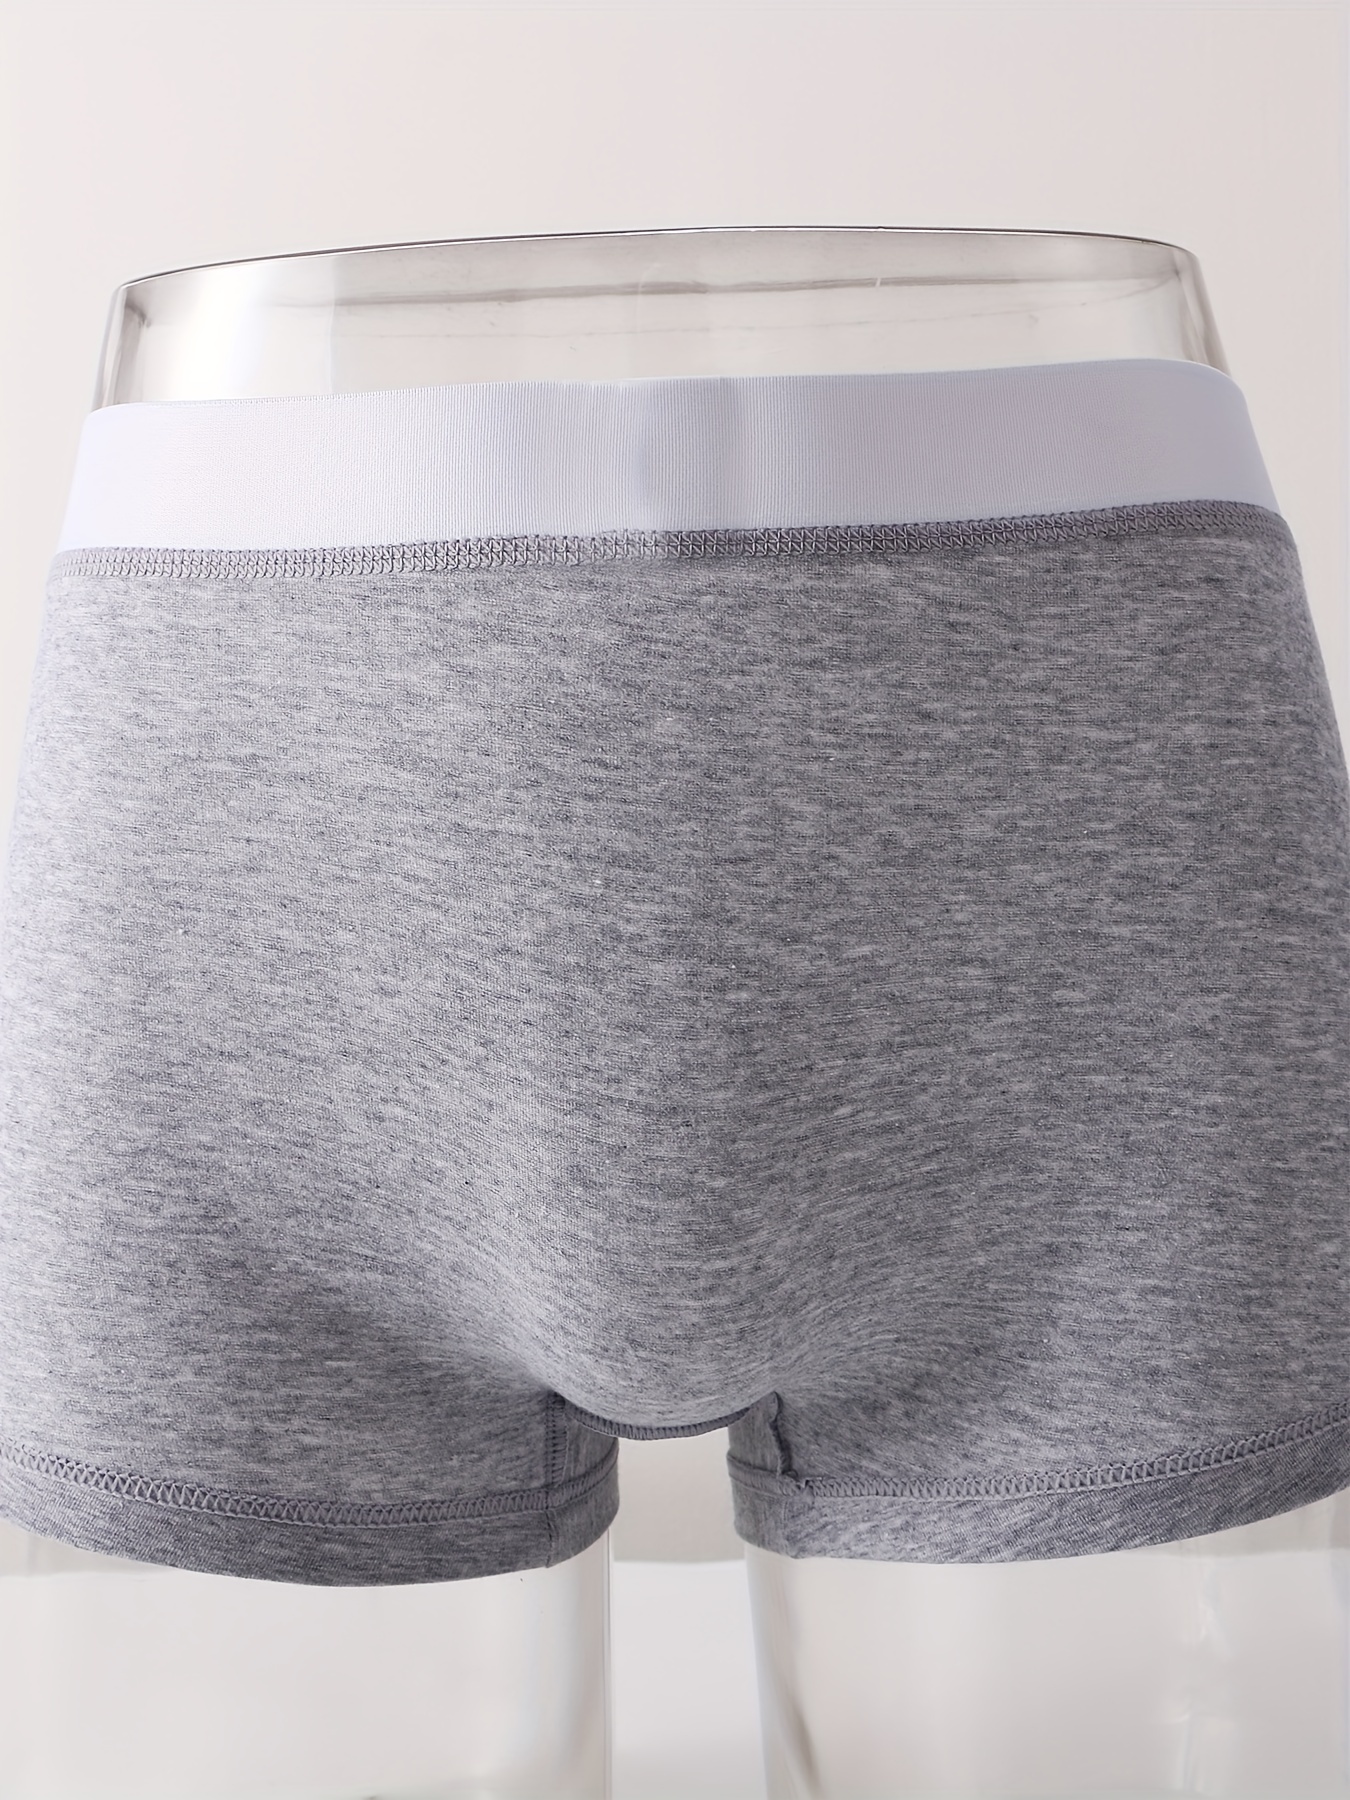 Men Underwear Boxer Briefs Panties Cotton Long Penis Pouch